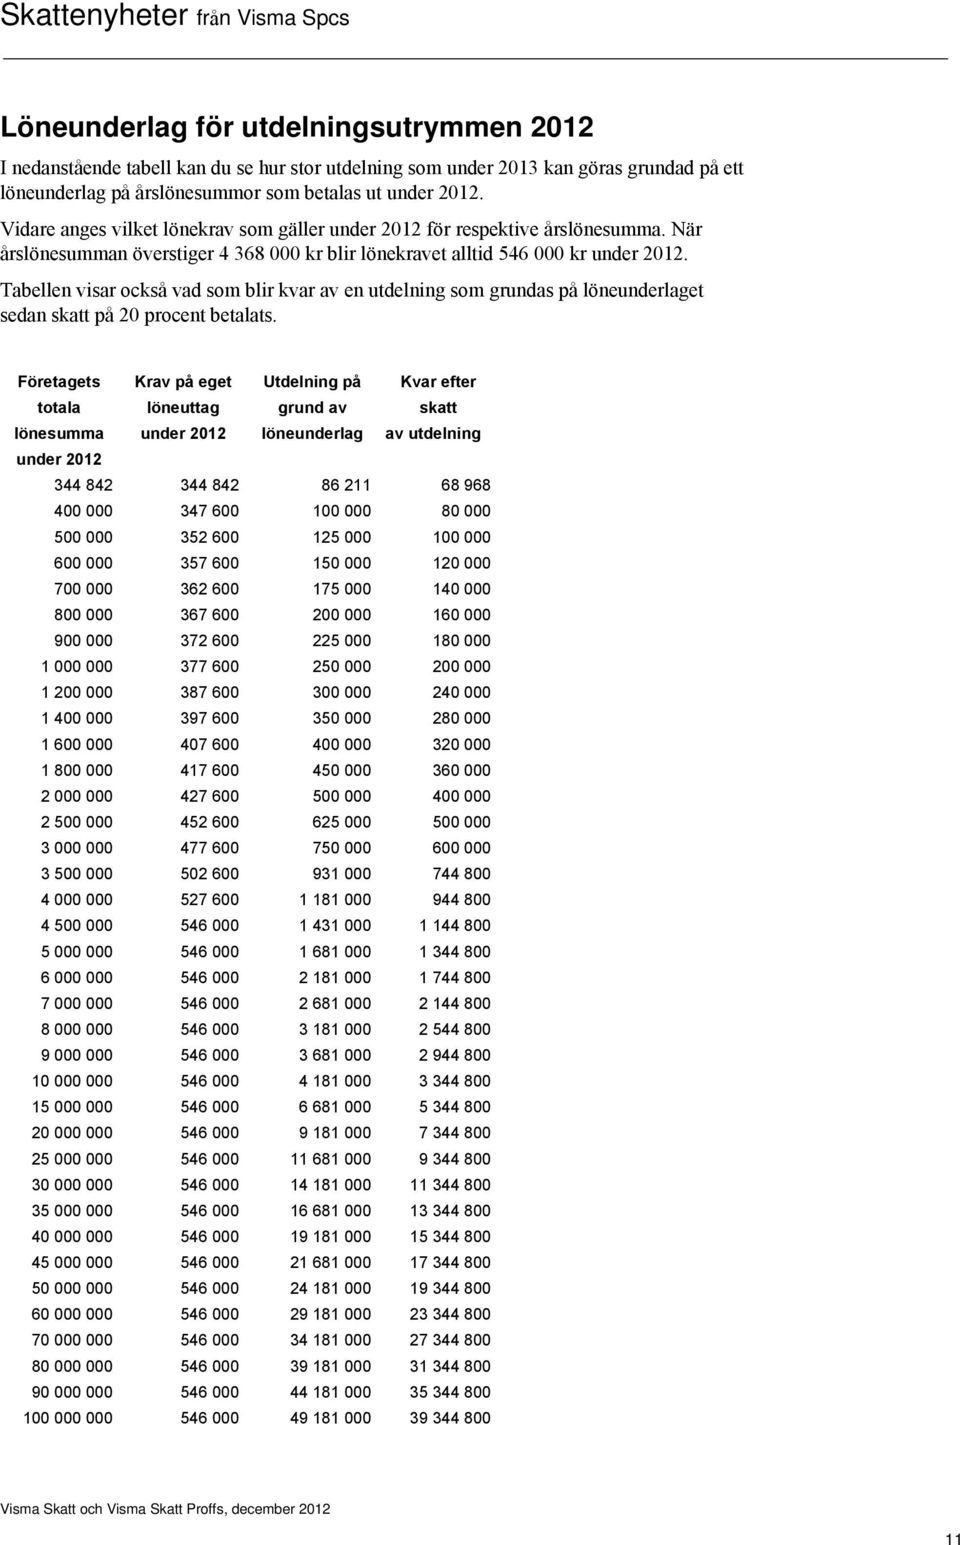 Tabellen visar också vad som blir kvar av en utdelning som grundas på löneunderlaget sedan skatt på 20 procent betalats.